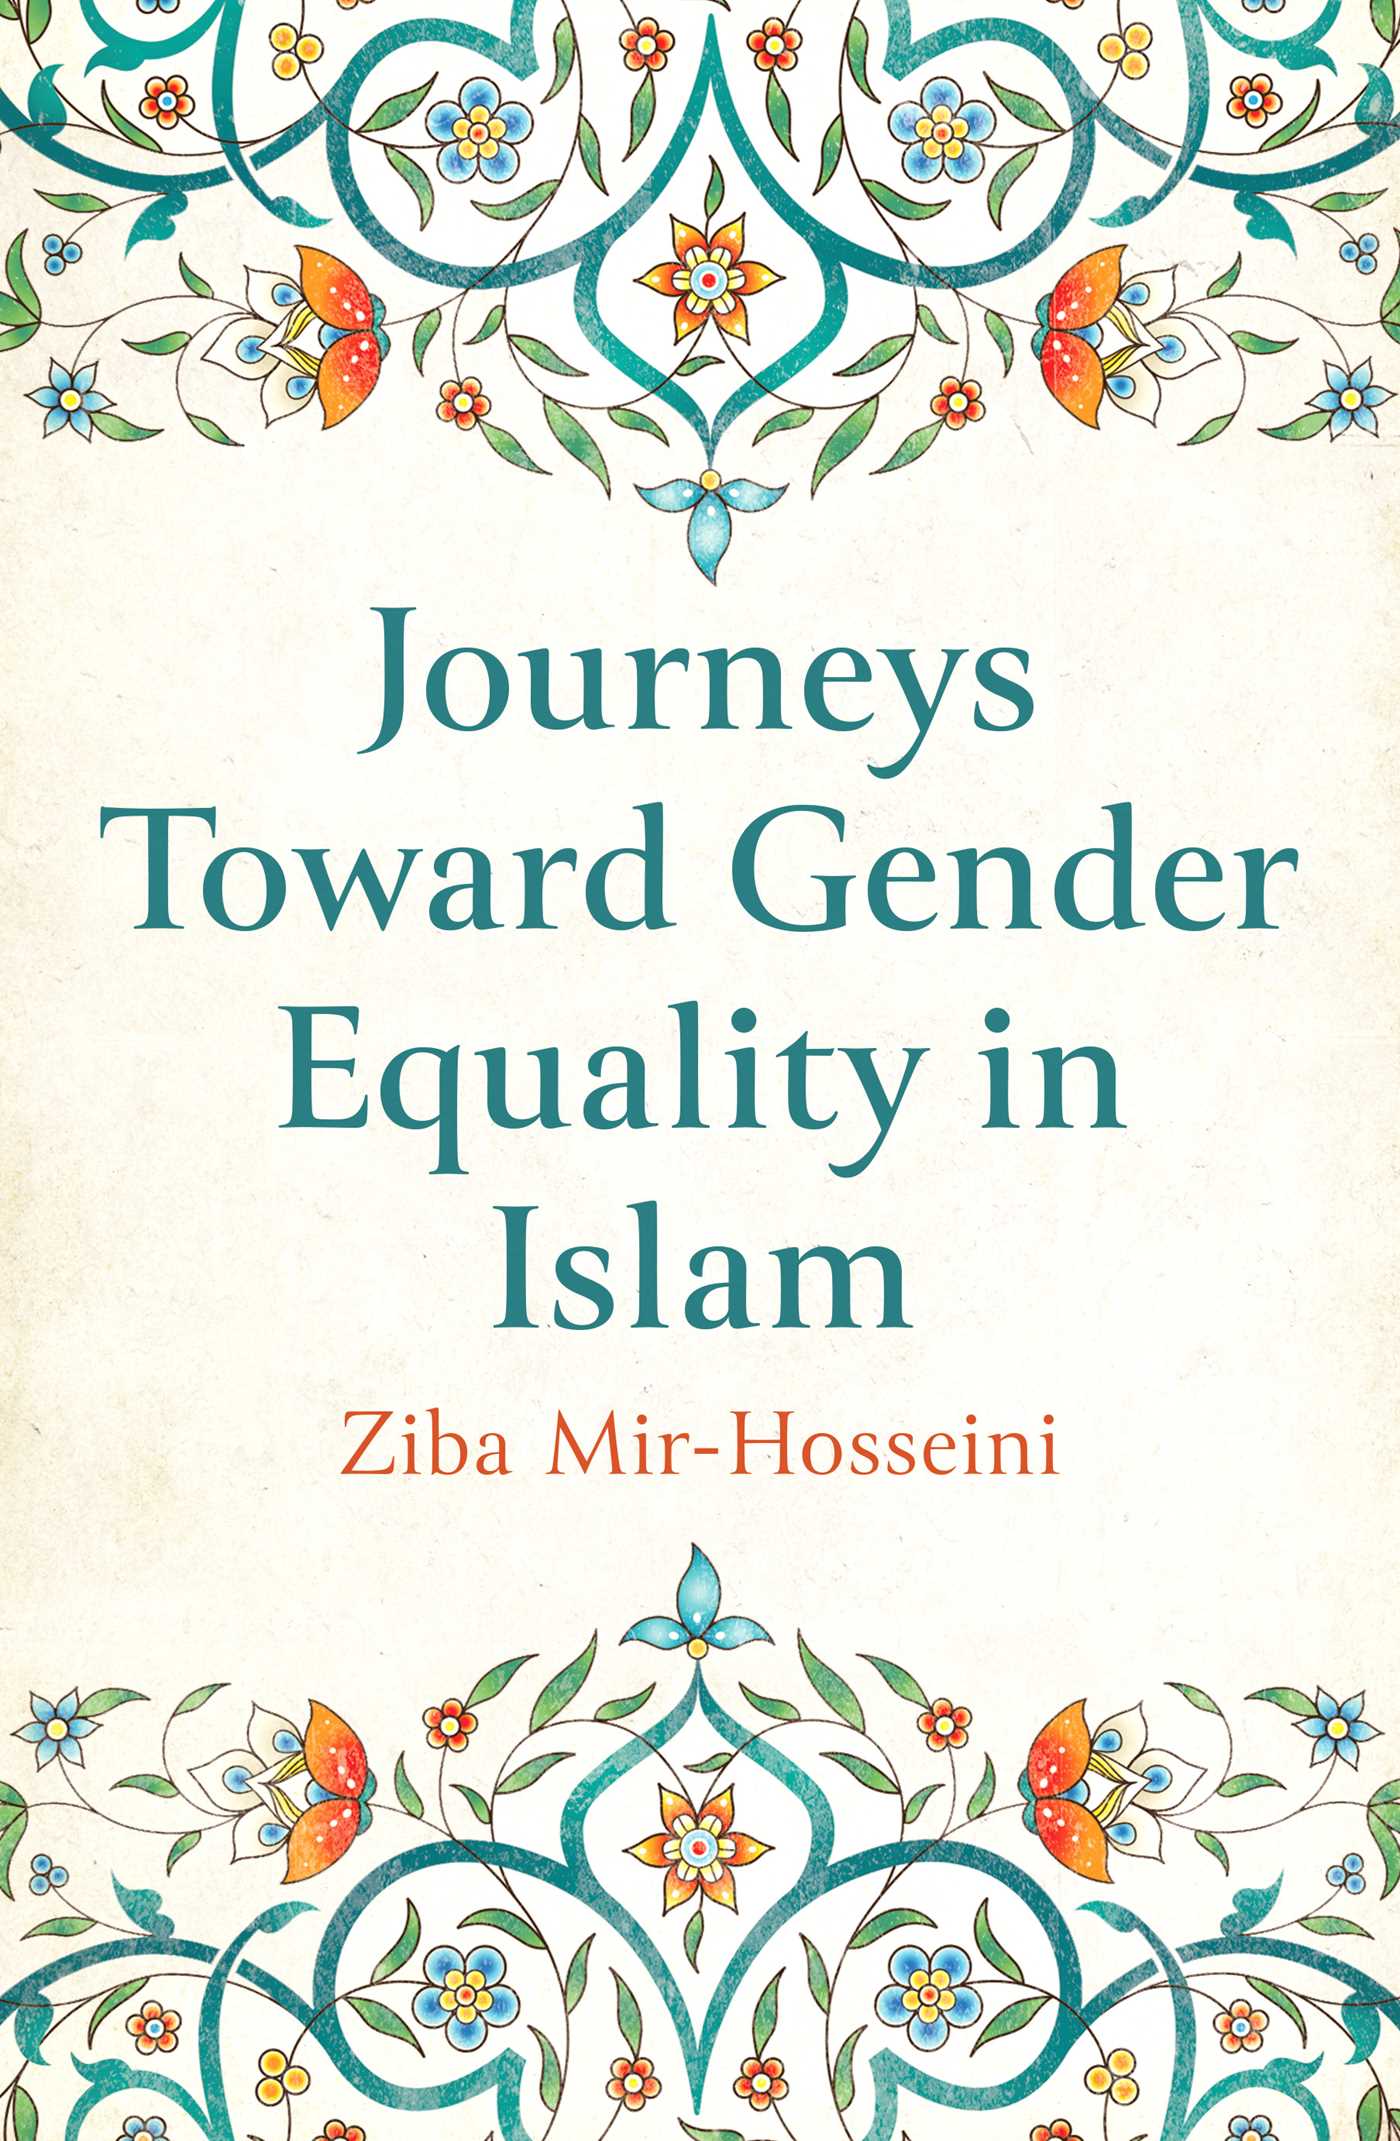 غلاف كتاب "رحلات نحو المساواة الجندريّة في الإسلام"، للأنثروبولجيّة زيبا مِير حُسيني (دار النشر: سايمُون &amp; شُوستِر)  Cover of Ziba Mir-Hosseini's "Journeys Toward Gender Equality in Islam" (published by Simon &amp; Schuster)